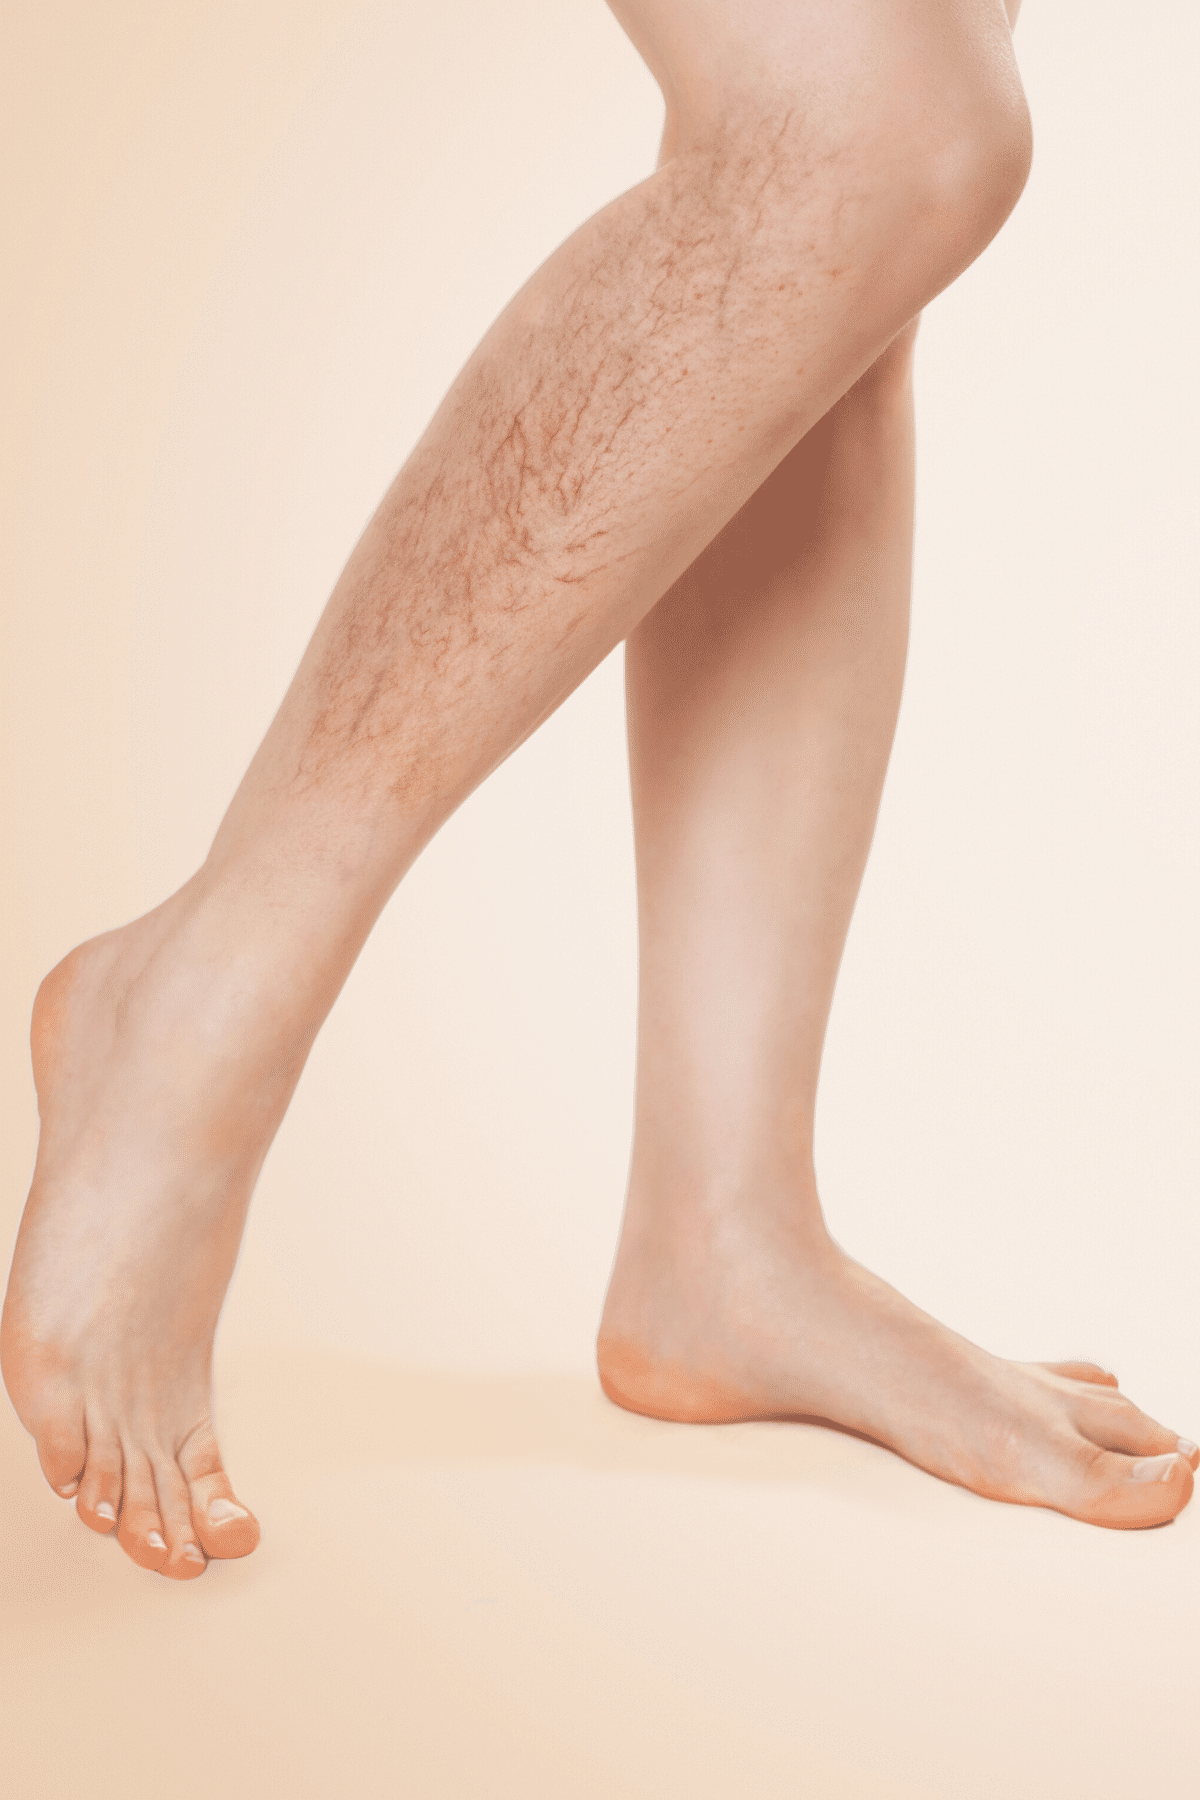 Sichtbare Venen auf der Haut an den Beinen - sogenannte Besenreiser